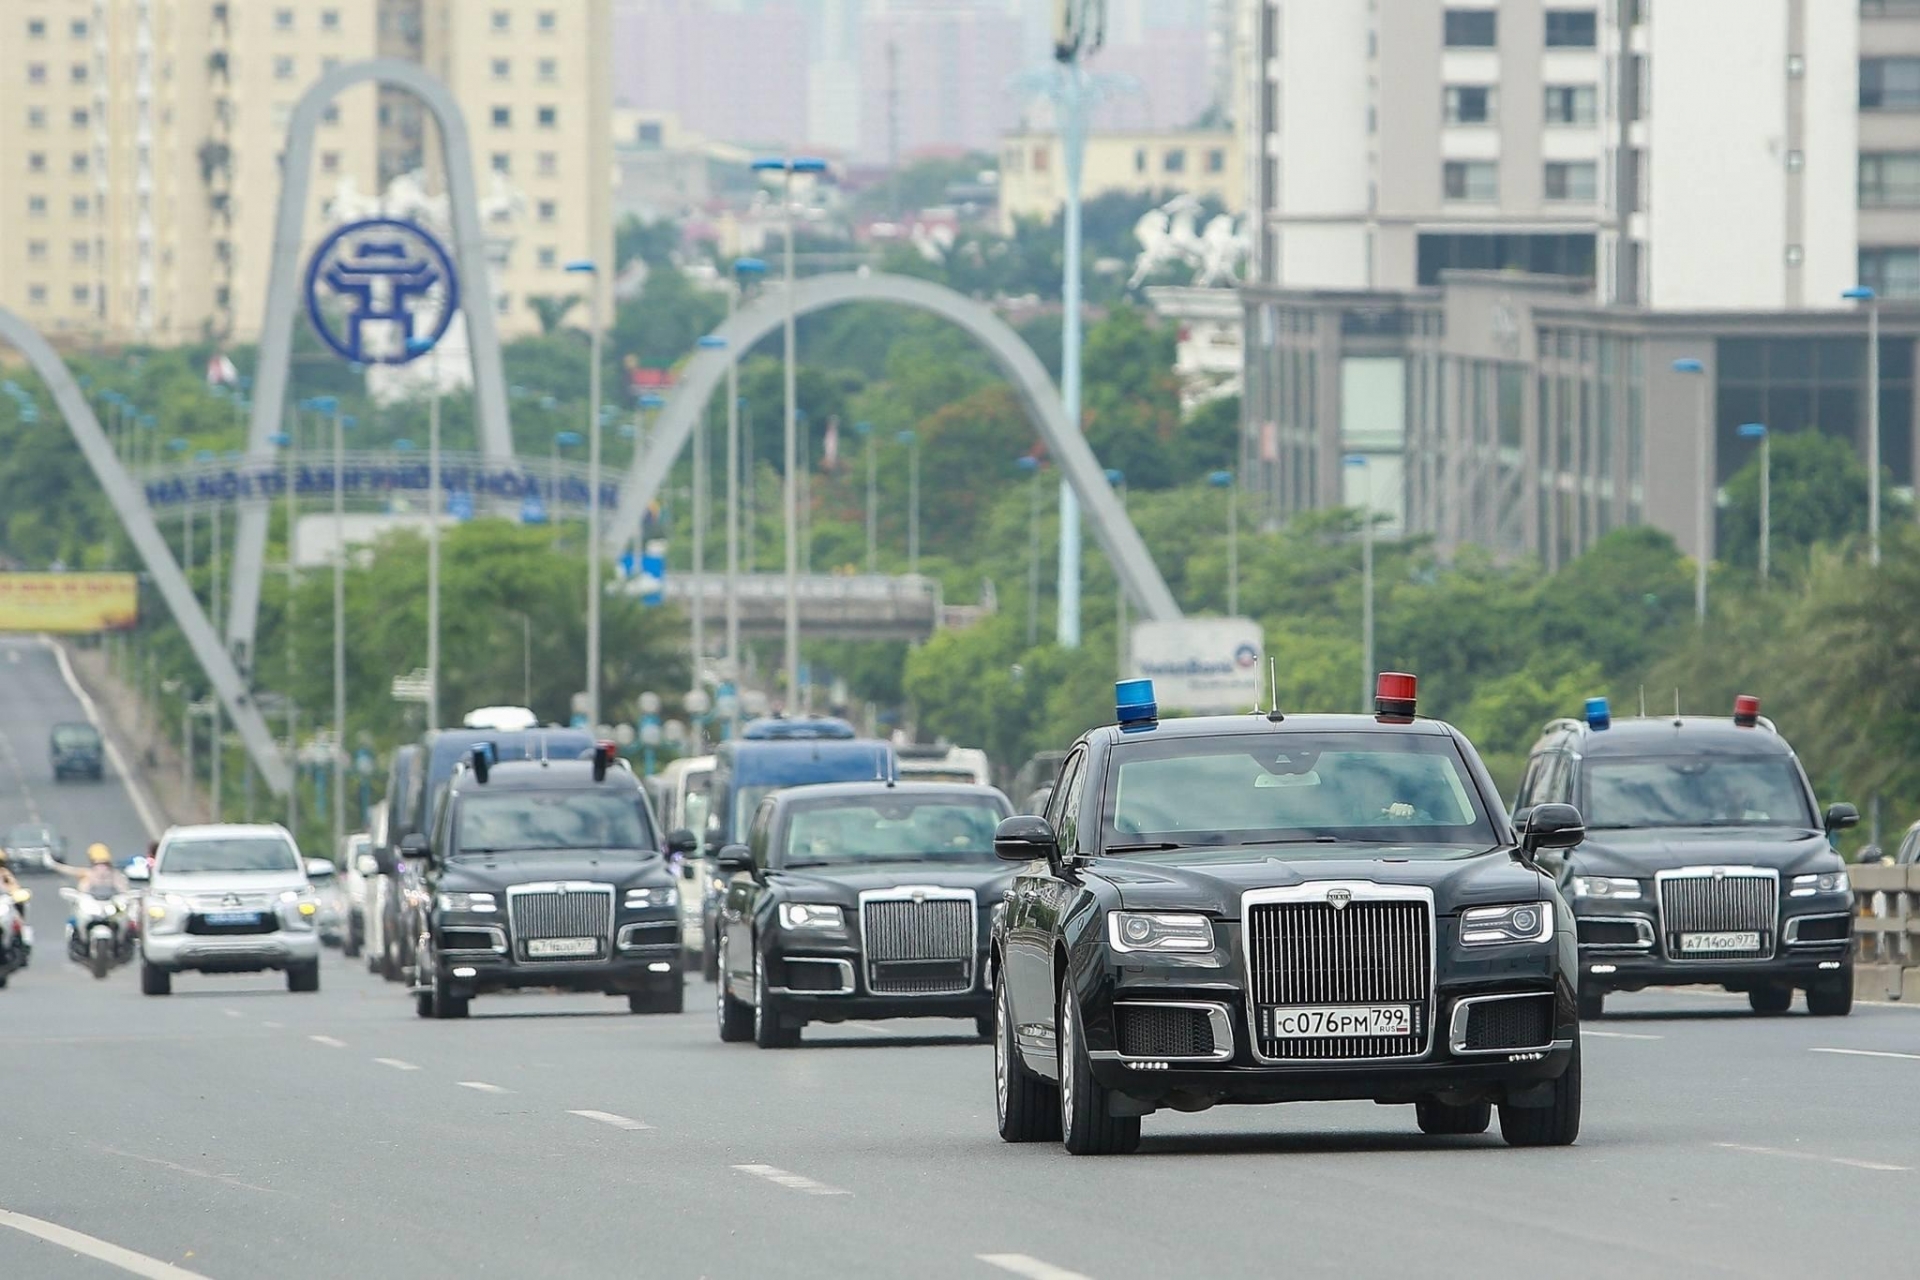 Dàn xe đặc chủng sắp tháp tùng Tổng thống Nga Putin lăn bánh trên đường phố Hà Nội 483580